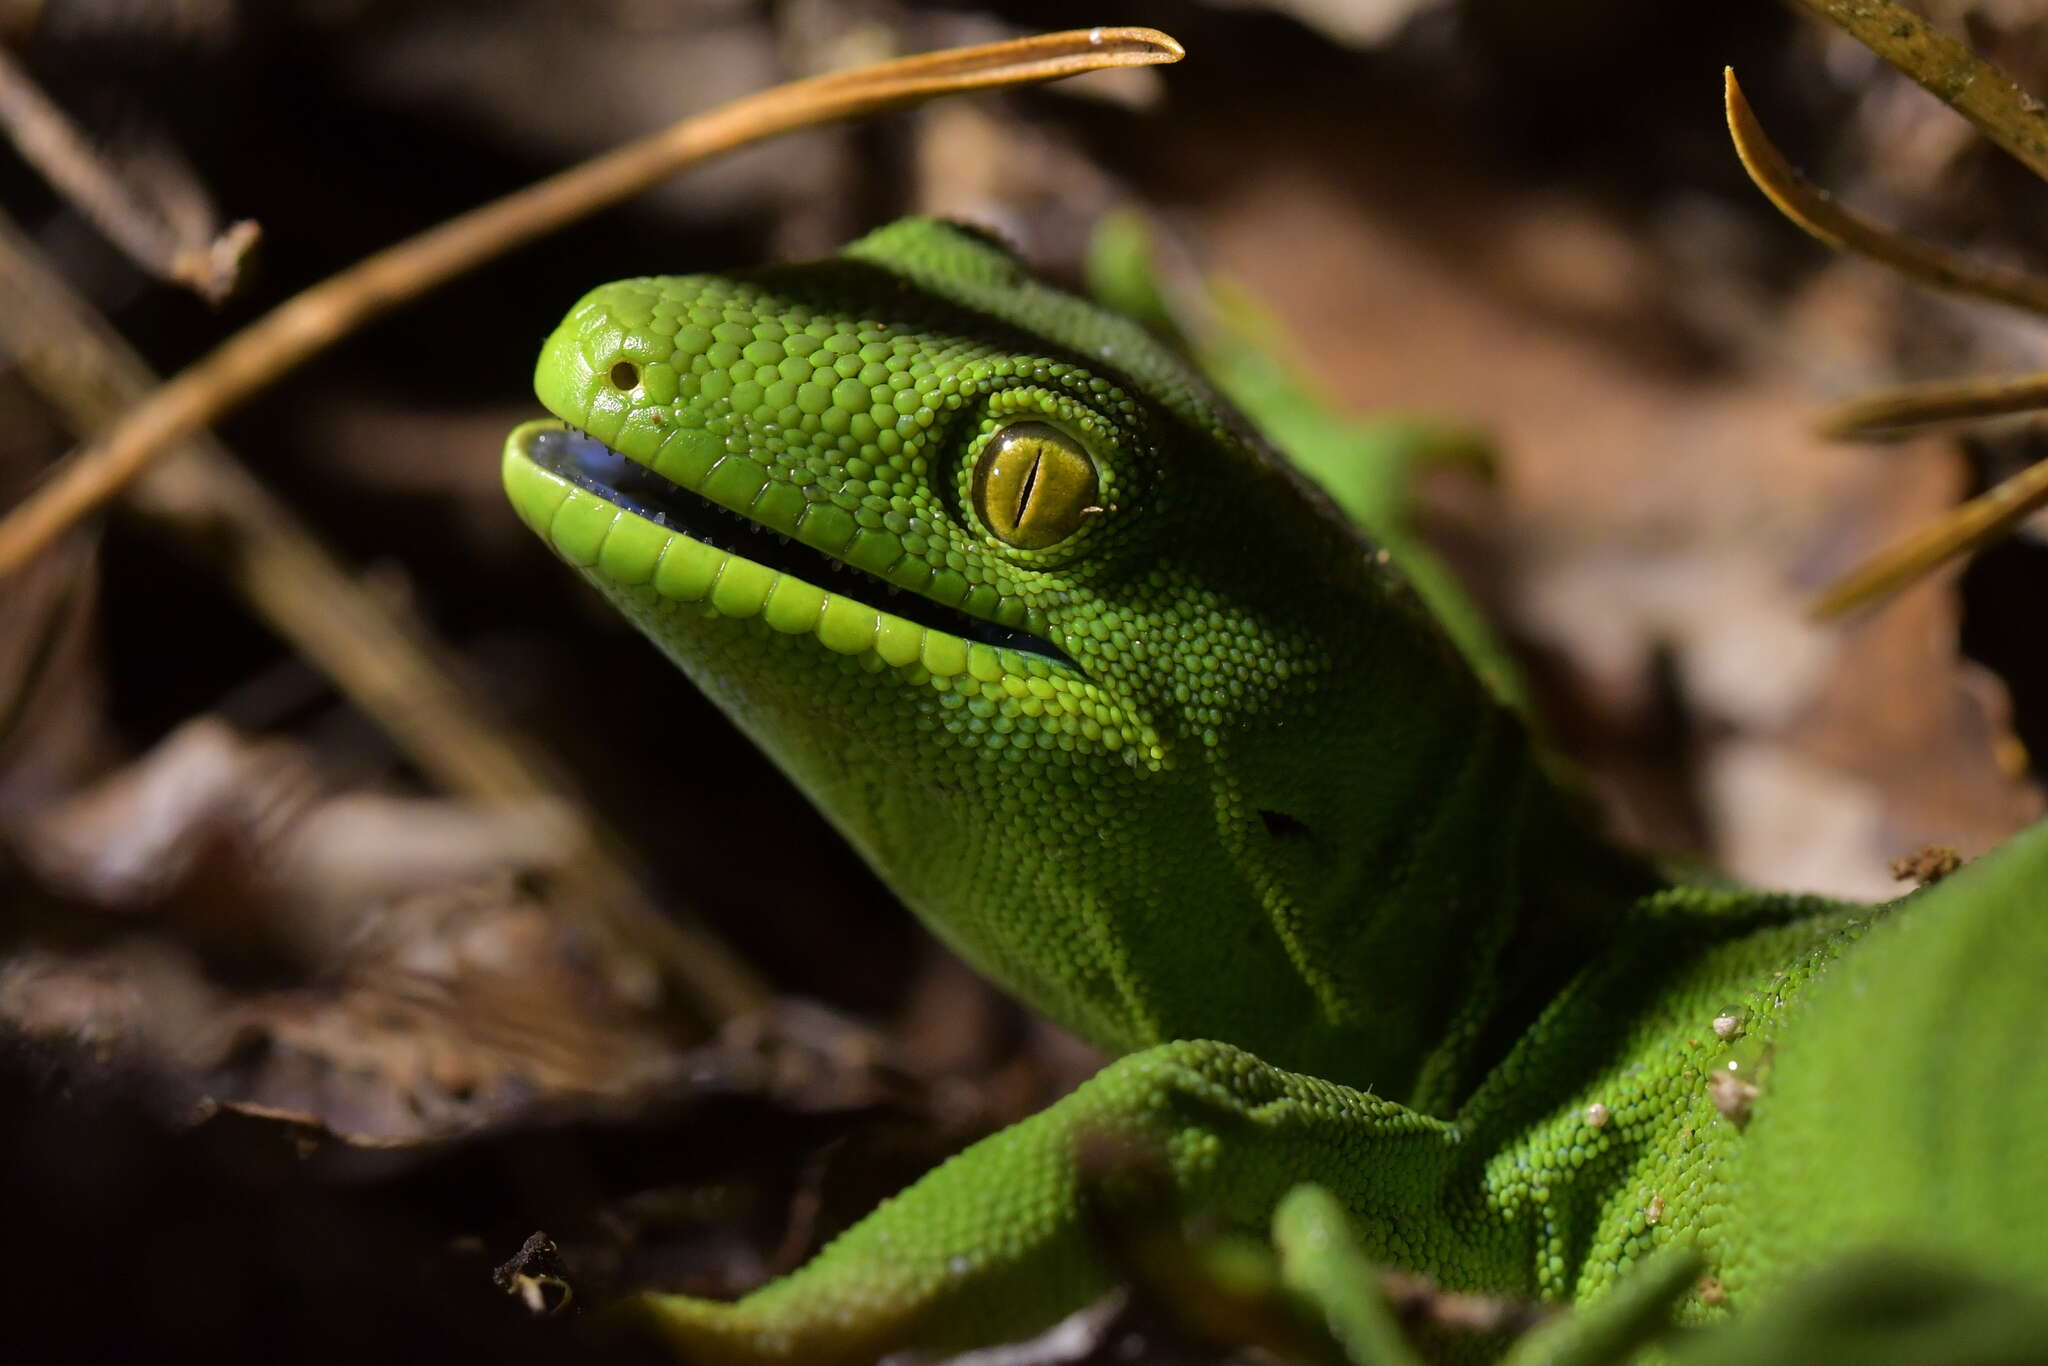 Image of Wellington green gecko